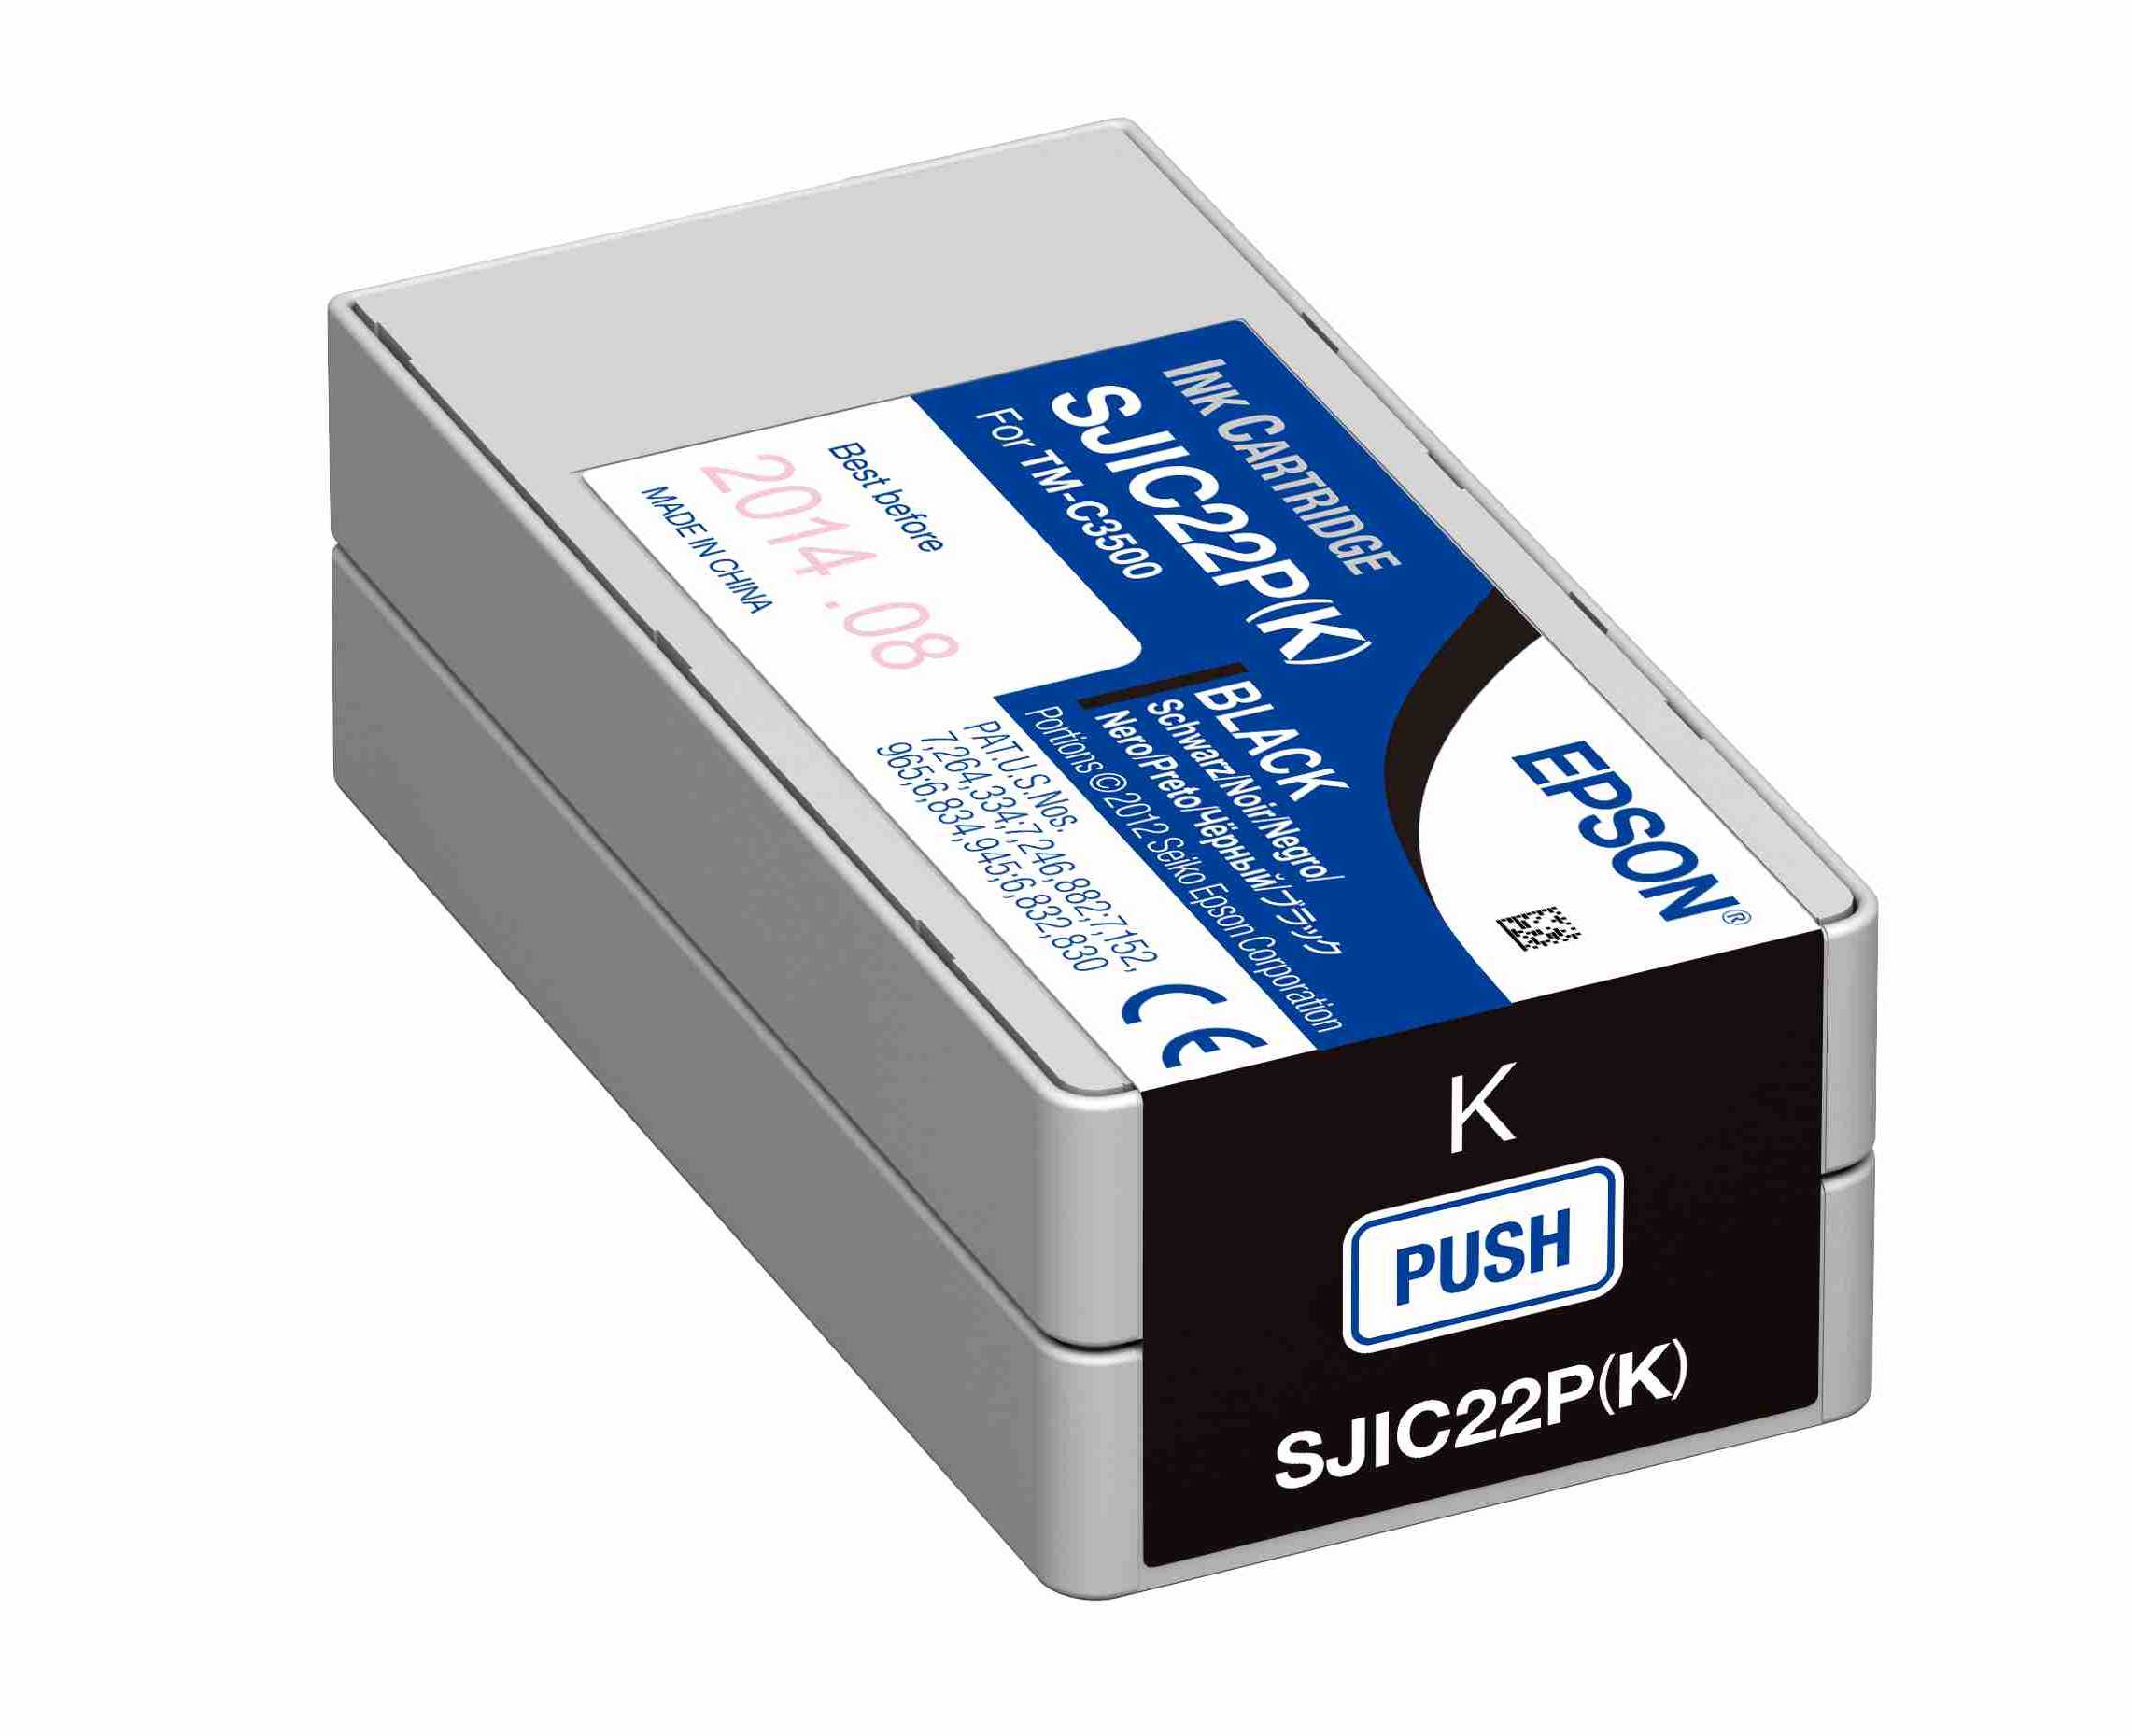 Kartusche Epson SJIC22P(K) schwarz für C3500